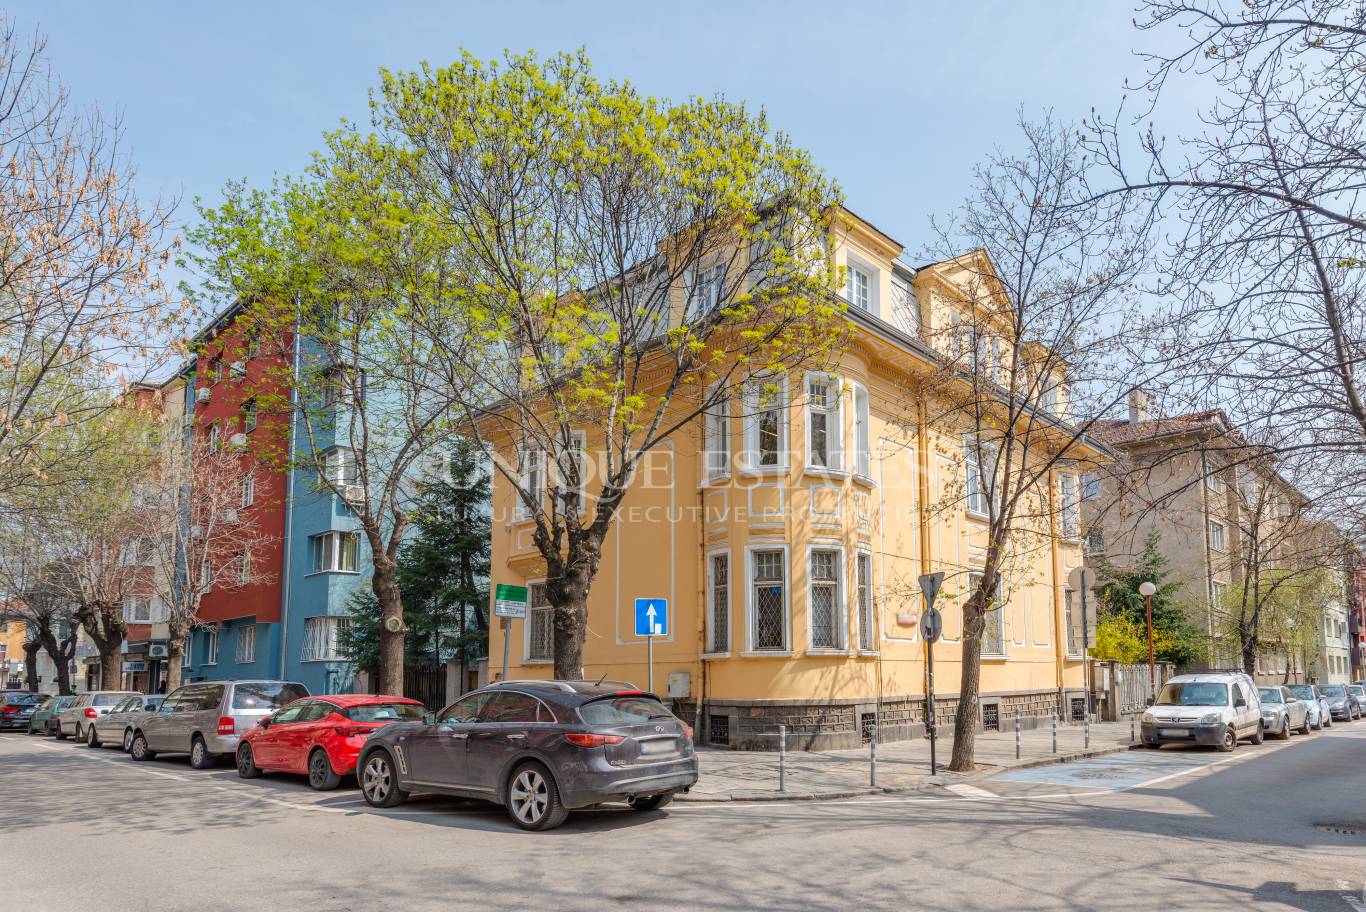 Офис под наем в София, Докторска градина - код на имота: N16661 - image 1